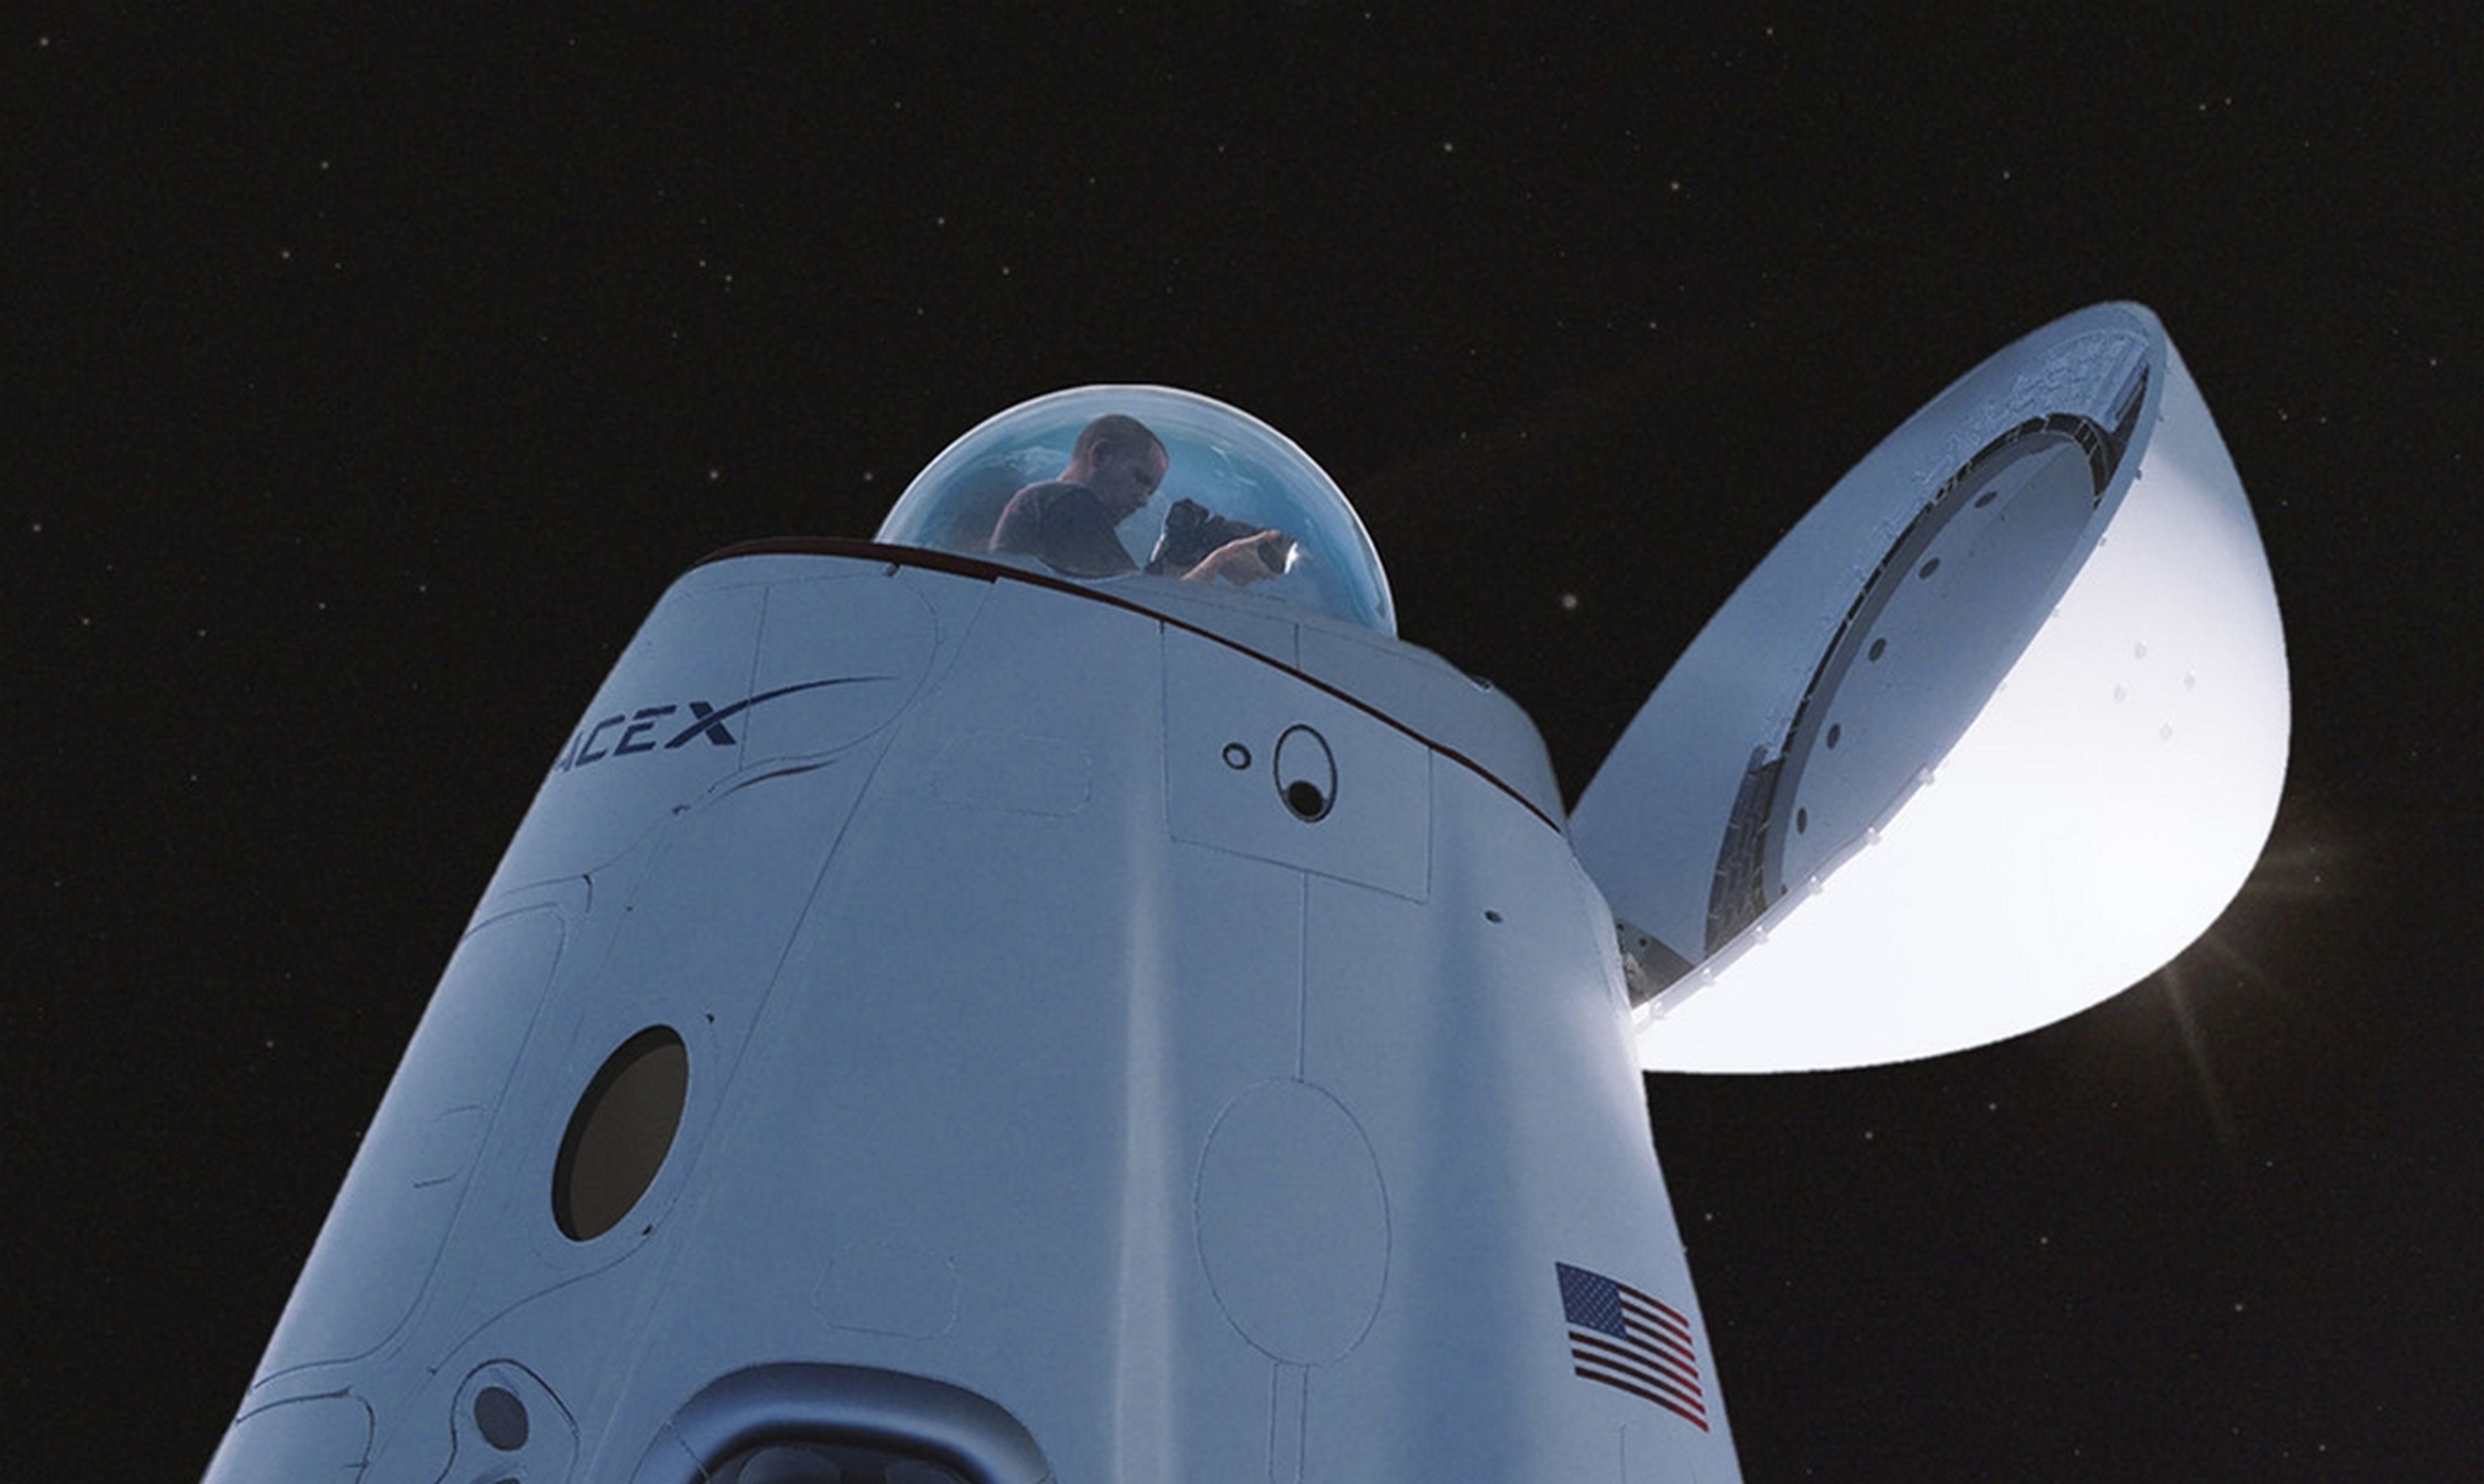 SpaceX muestra su nave Crew Dragon para turistas, con una sorpresa en la punta del cohete